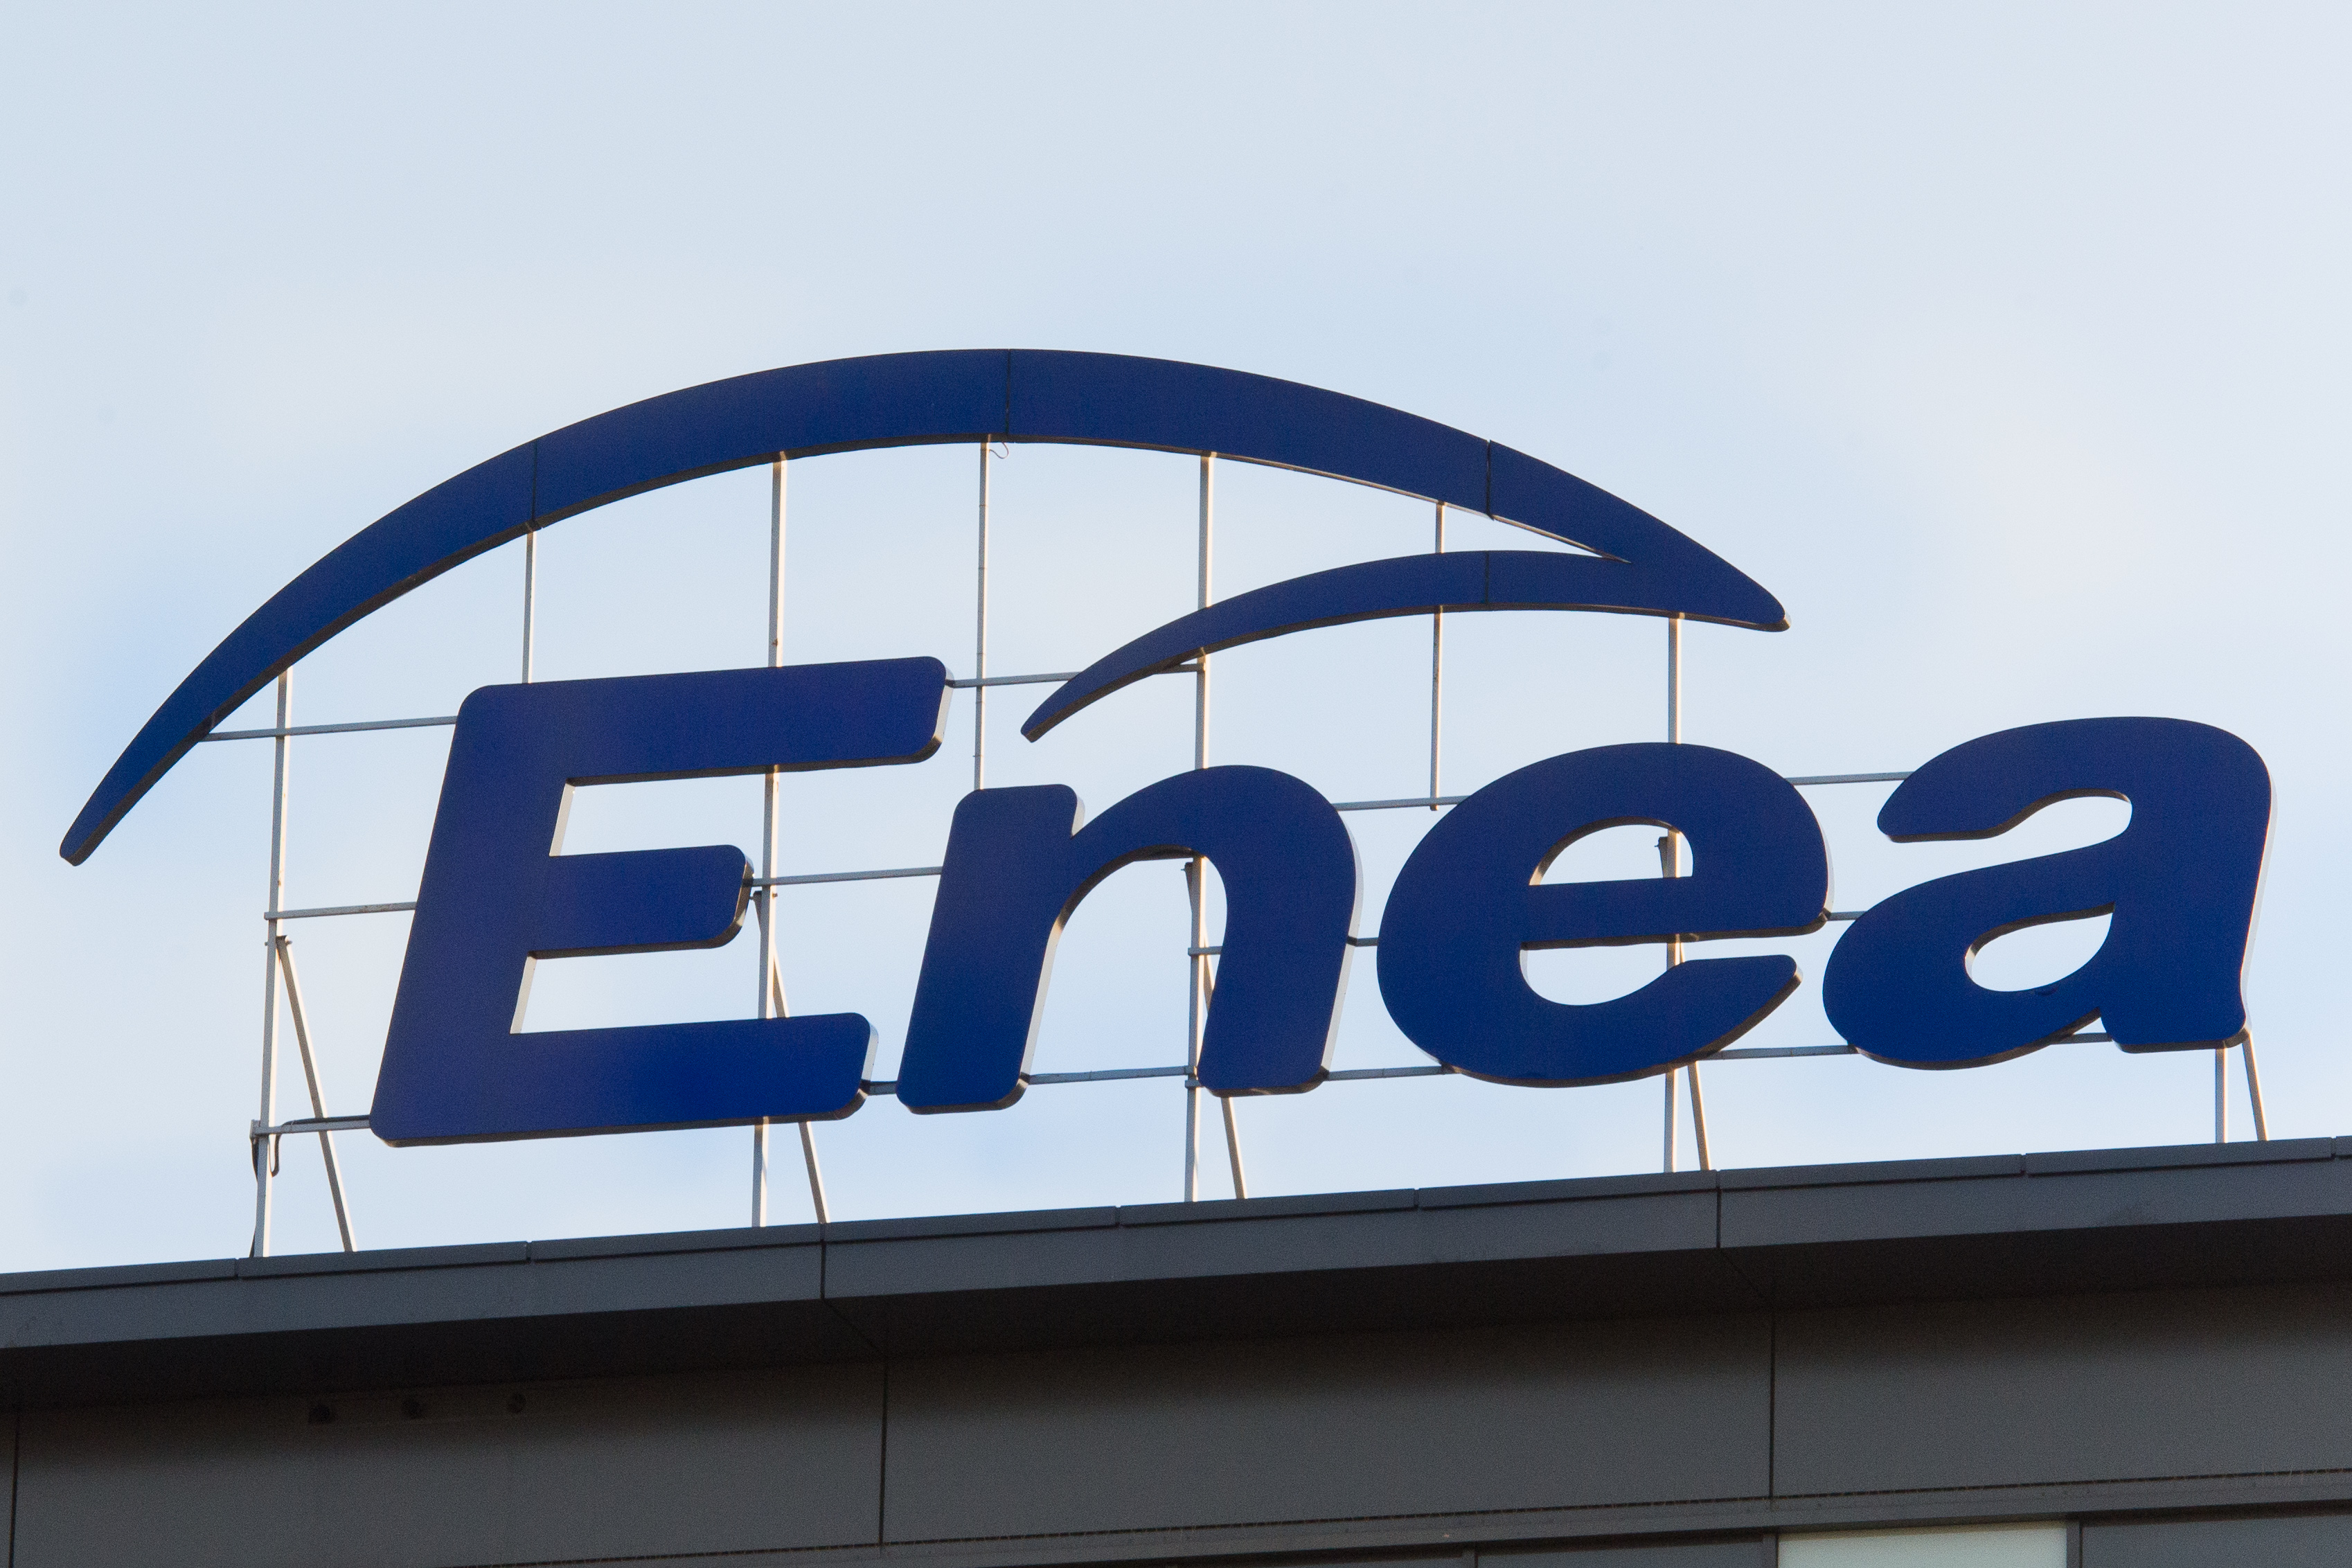 Enea buduje solidne podstawy dla dalszego rozwoju